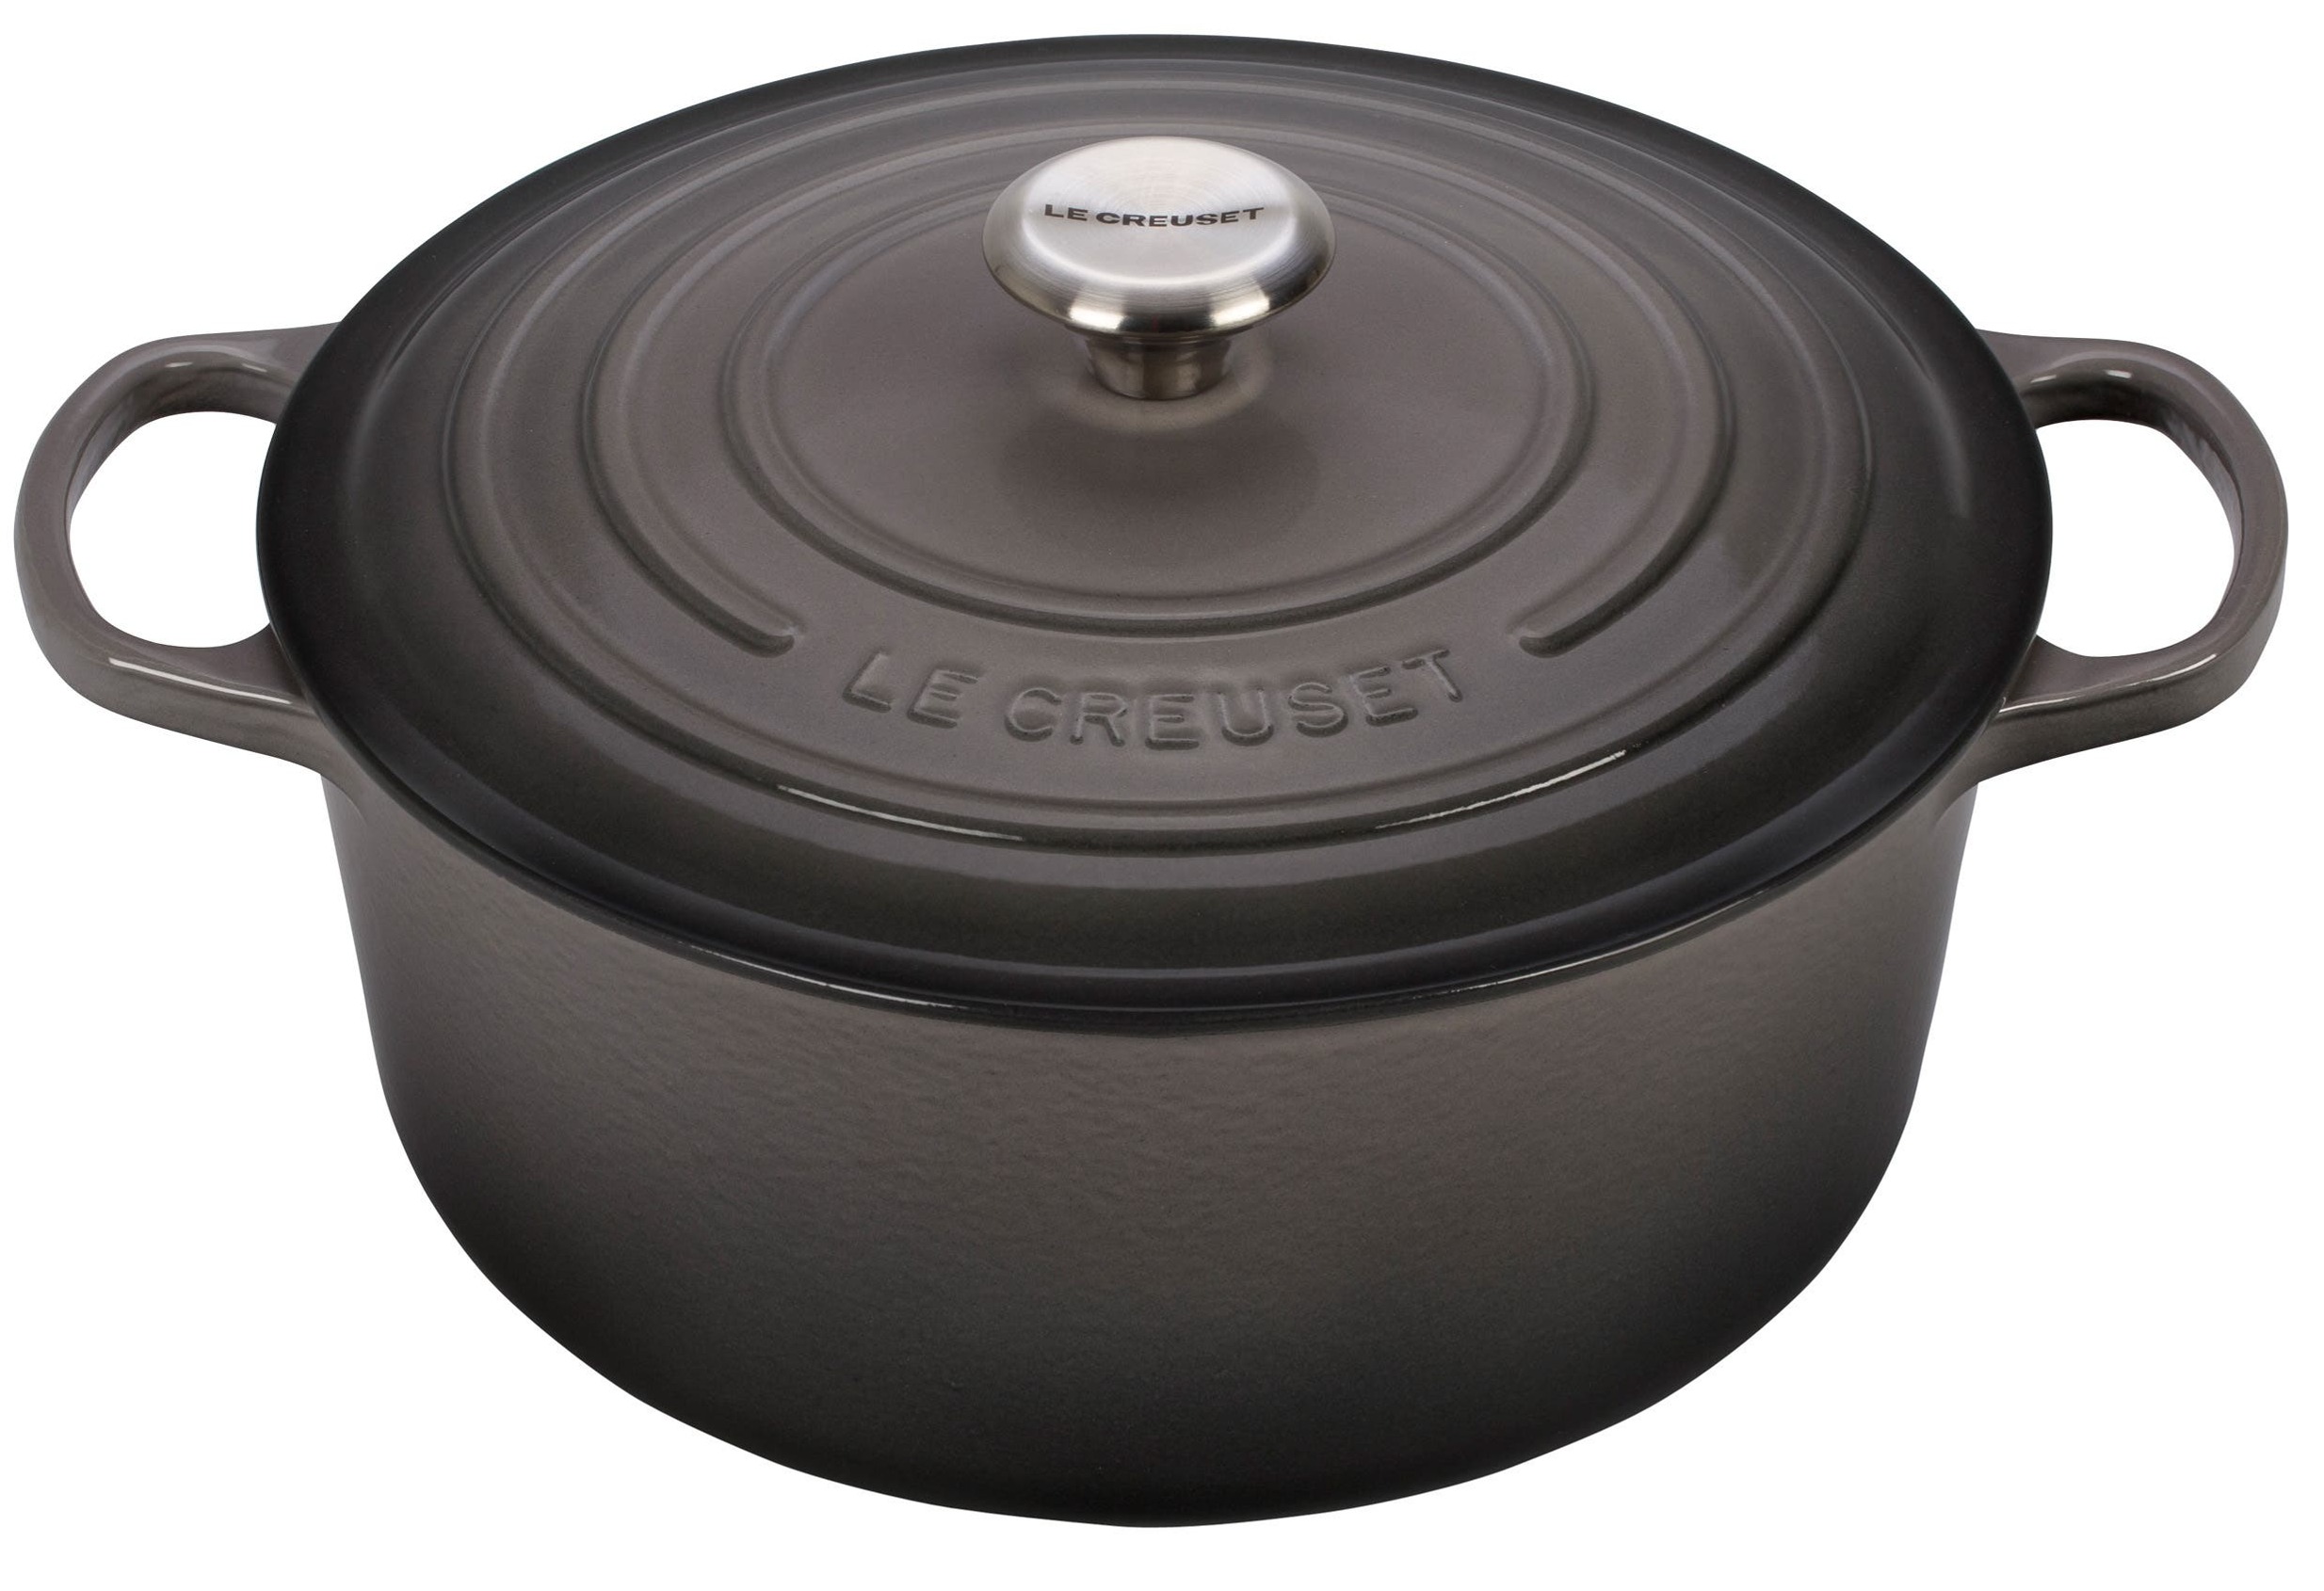 Le Creuset Enameled Cast Iron Signature 9 Quart Round Dutch Oven in Cerise  — Las Cosas Kitchen Shoppe